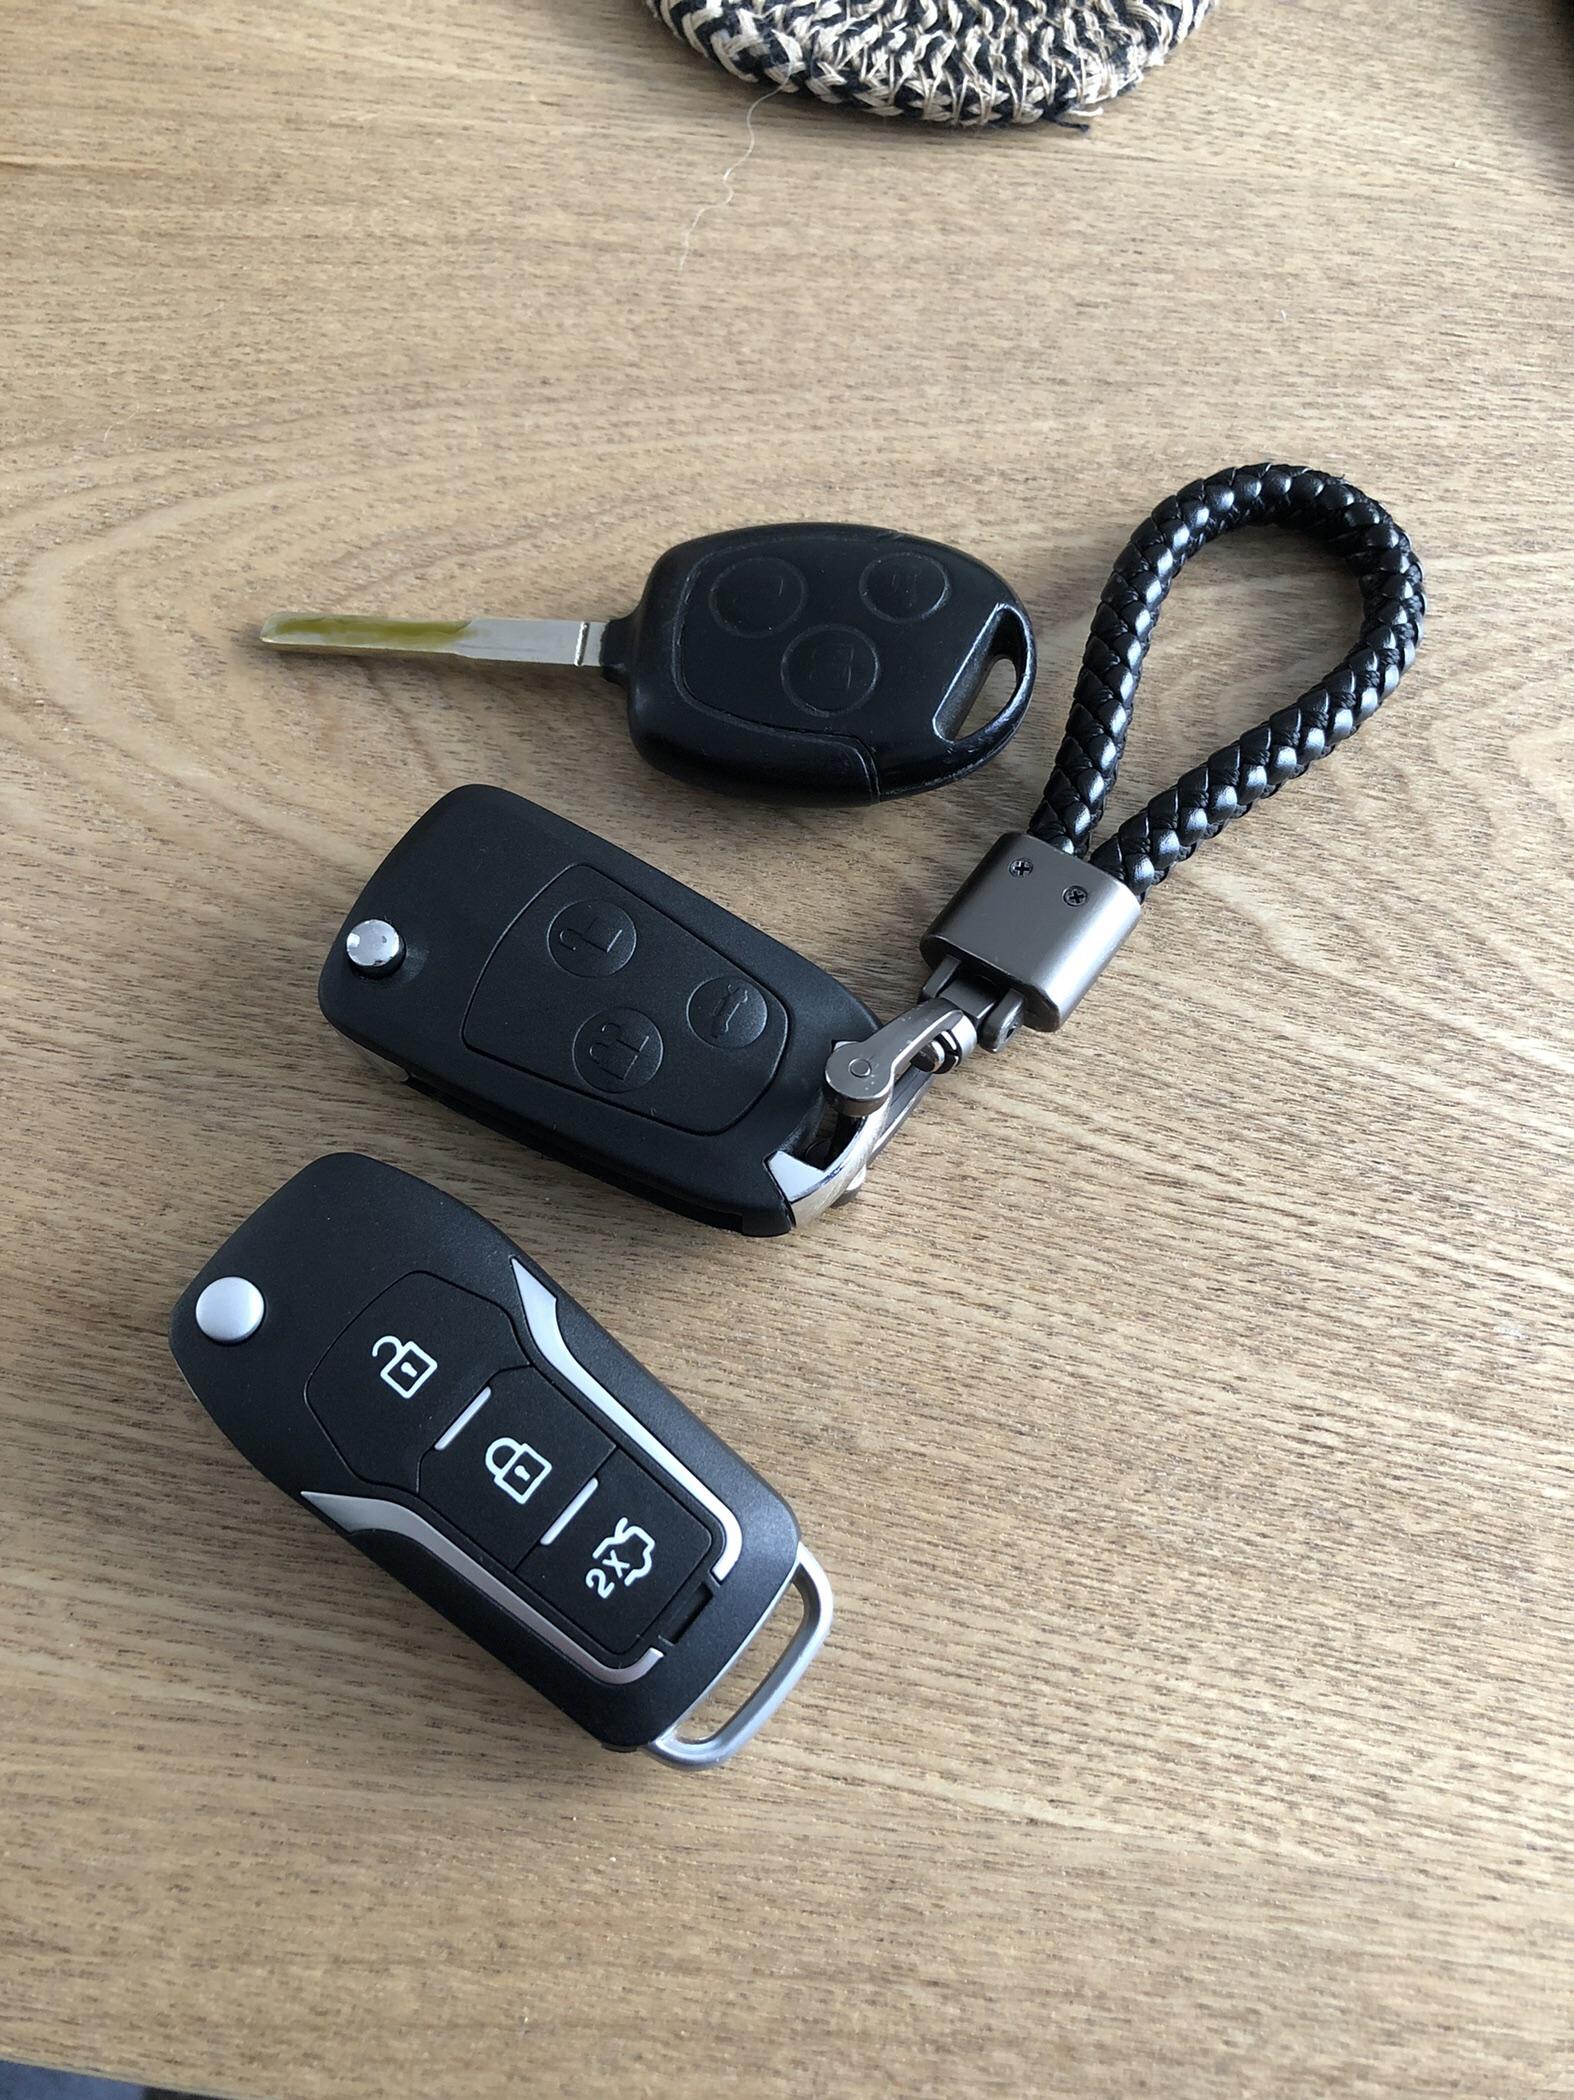 Upgrading car key - Ford Fiesta Club - Ford Owners Club - Ford Forums